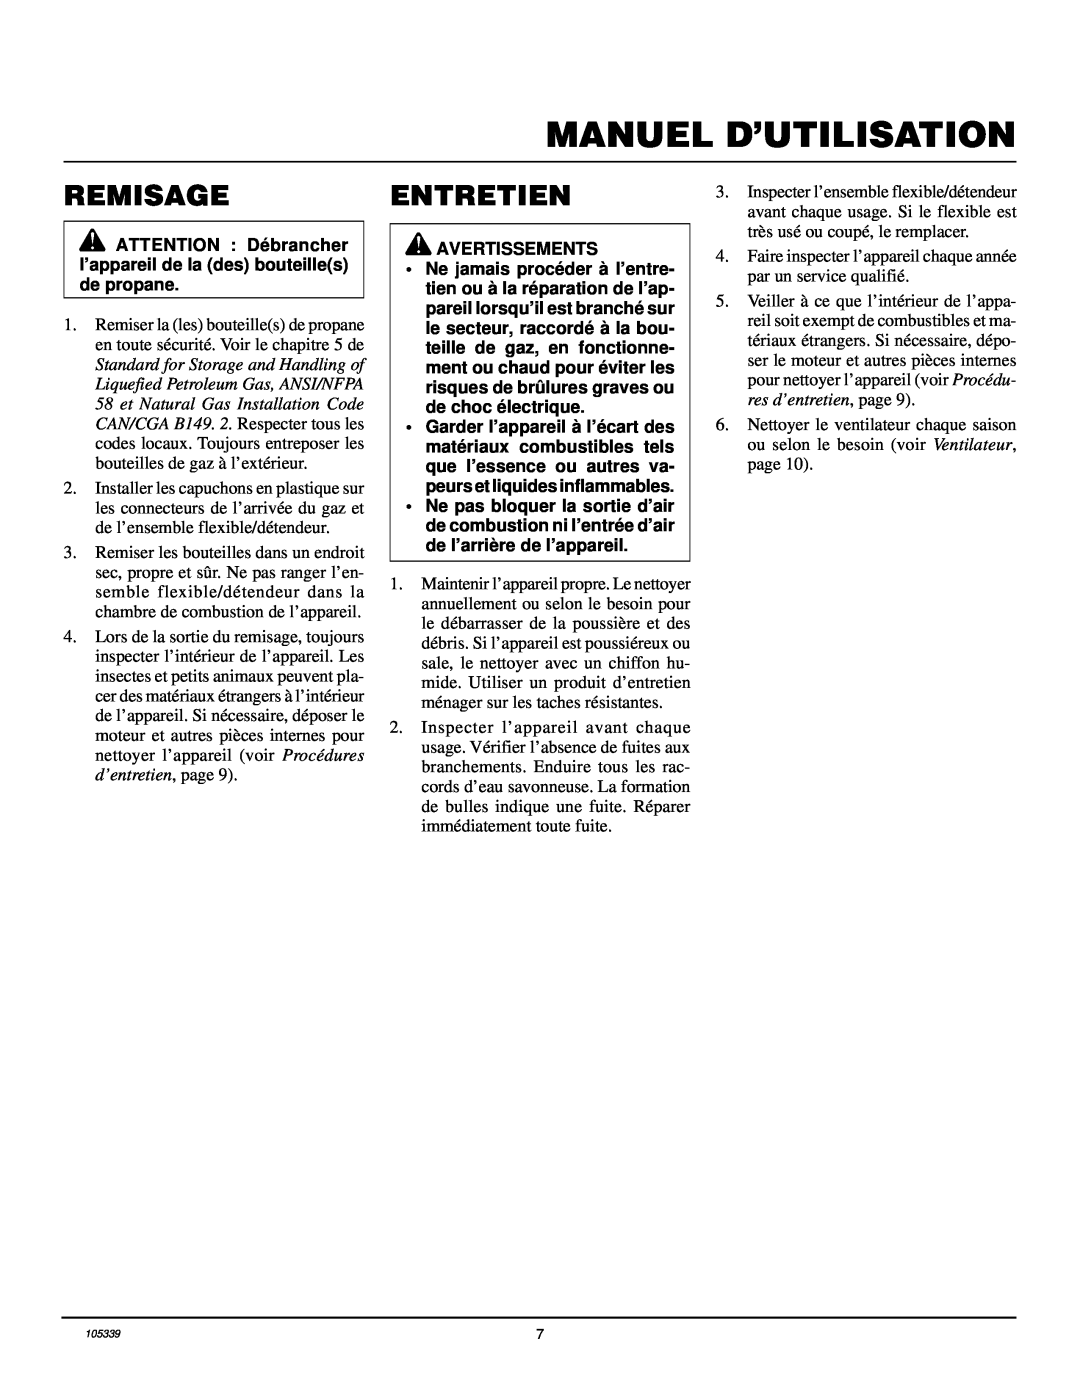 Desa RCLP50VA owner manual Remisage, Entretien, Manuel D’Utilisation 